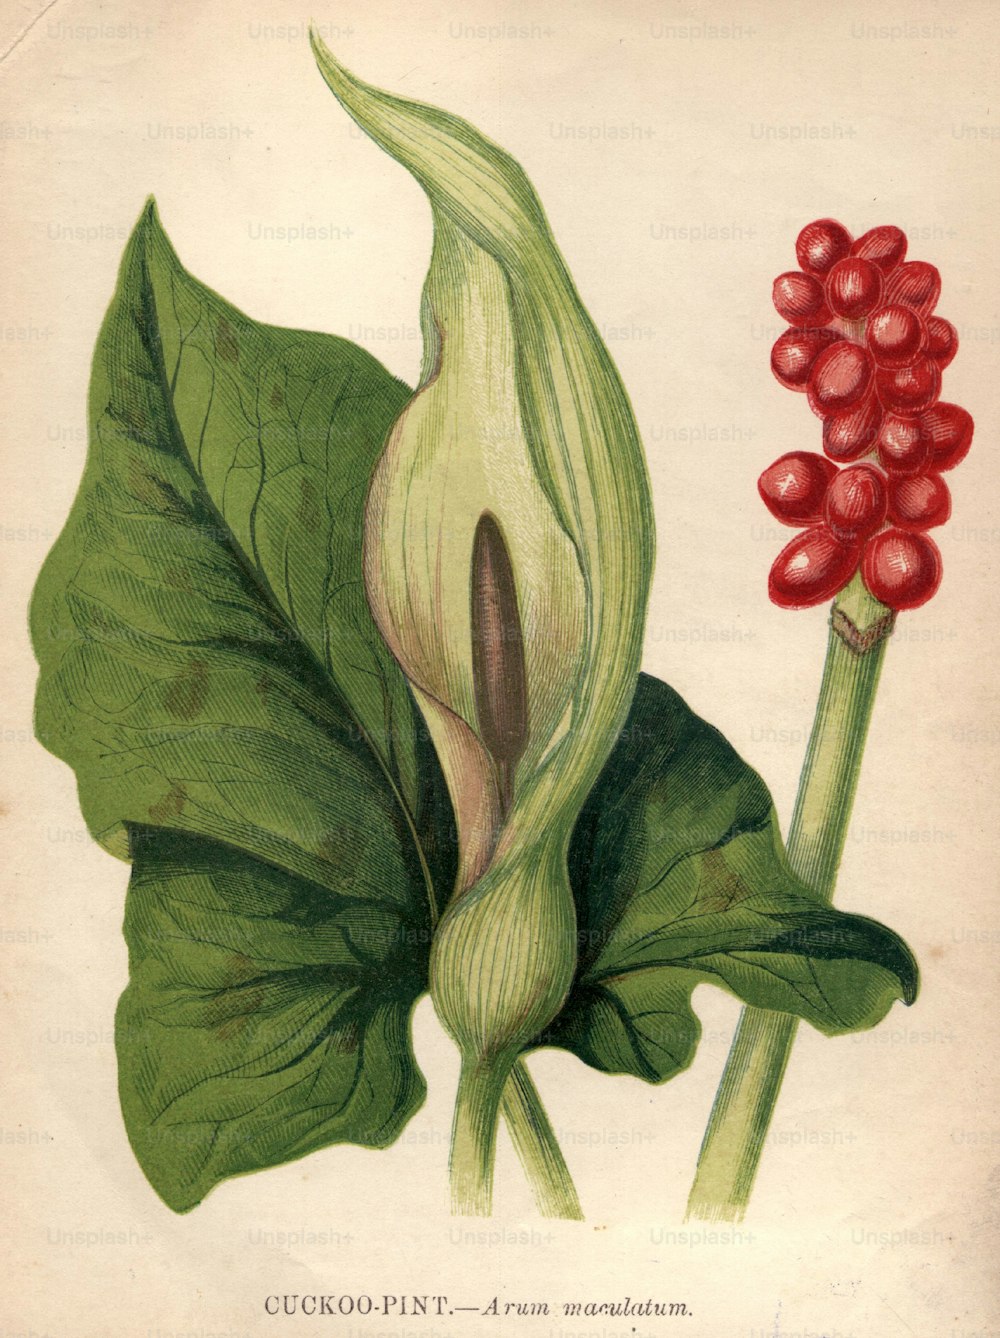 1900年頃:Arum maculatum、またはカッコウパイント、ウェイクロビンやローズアンドレディースとしても知られ、非常に有毒な赤い果実があります。 (写真提供:Hulton Archive/Getty Images)